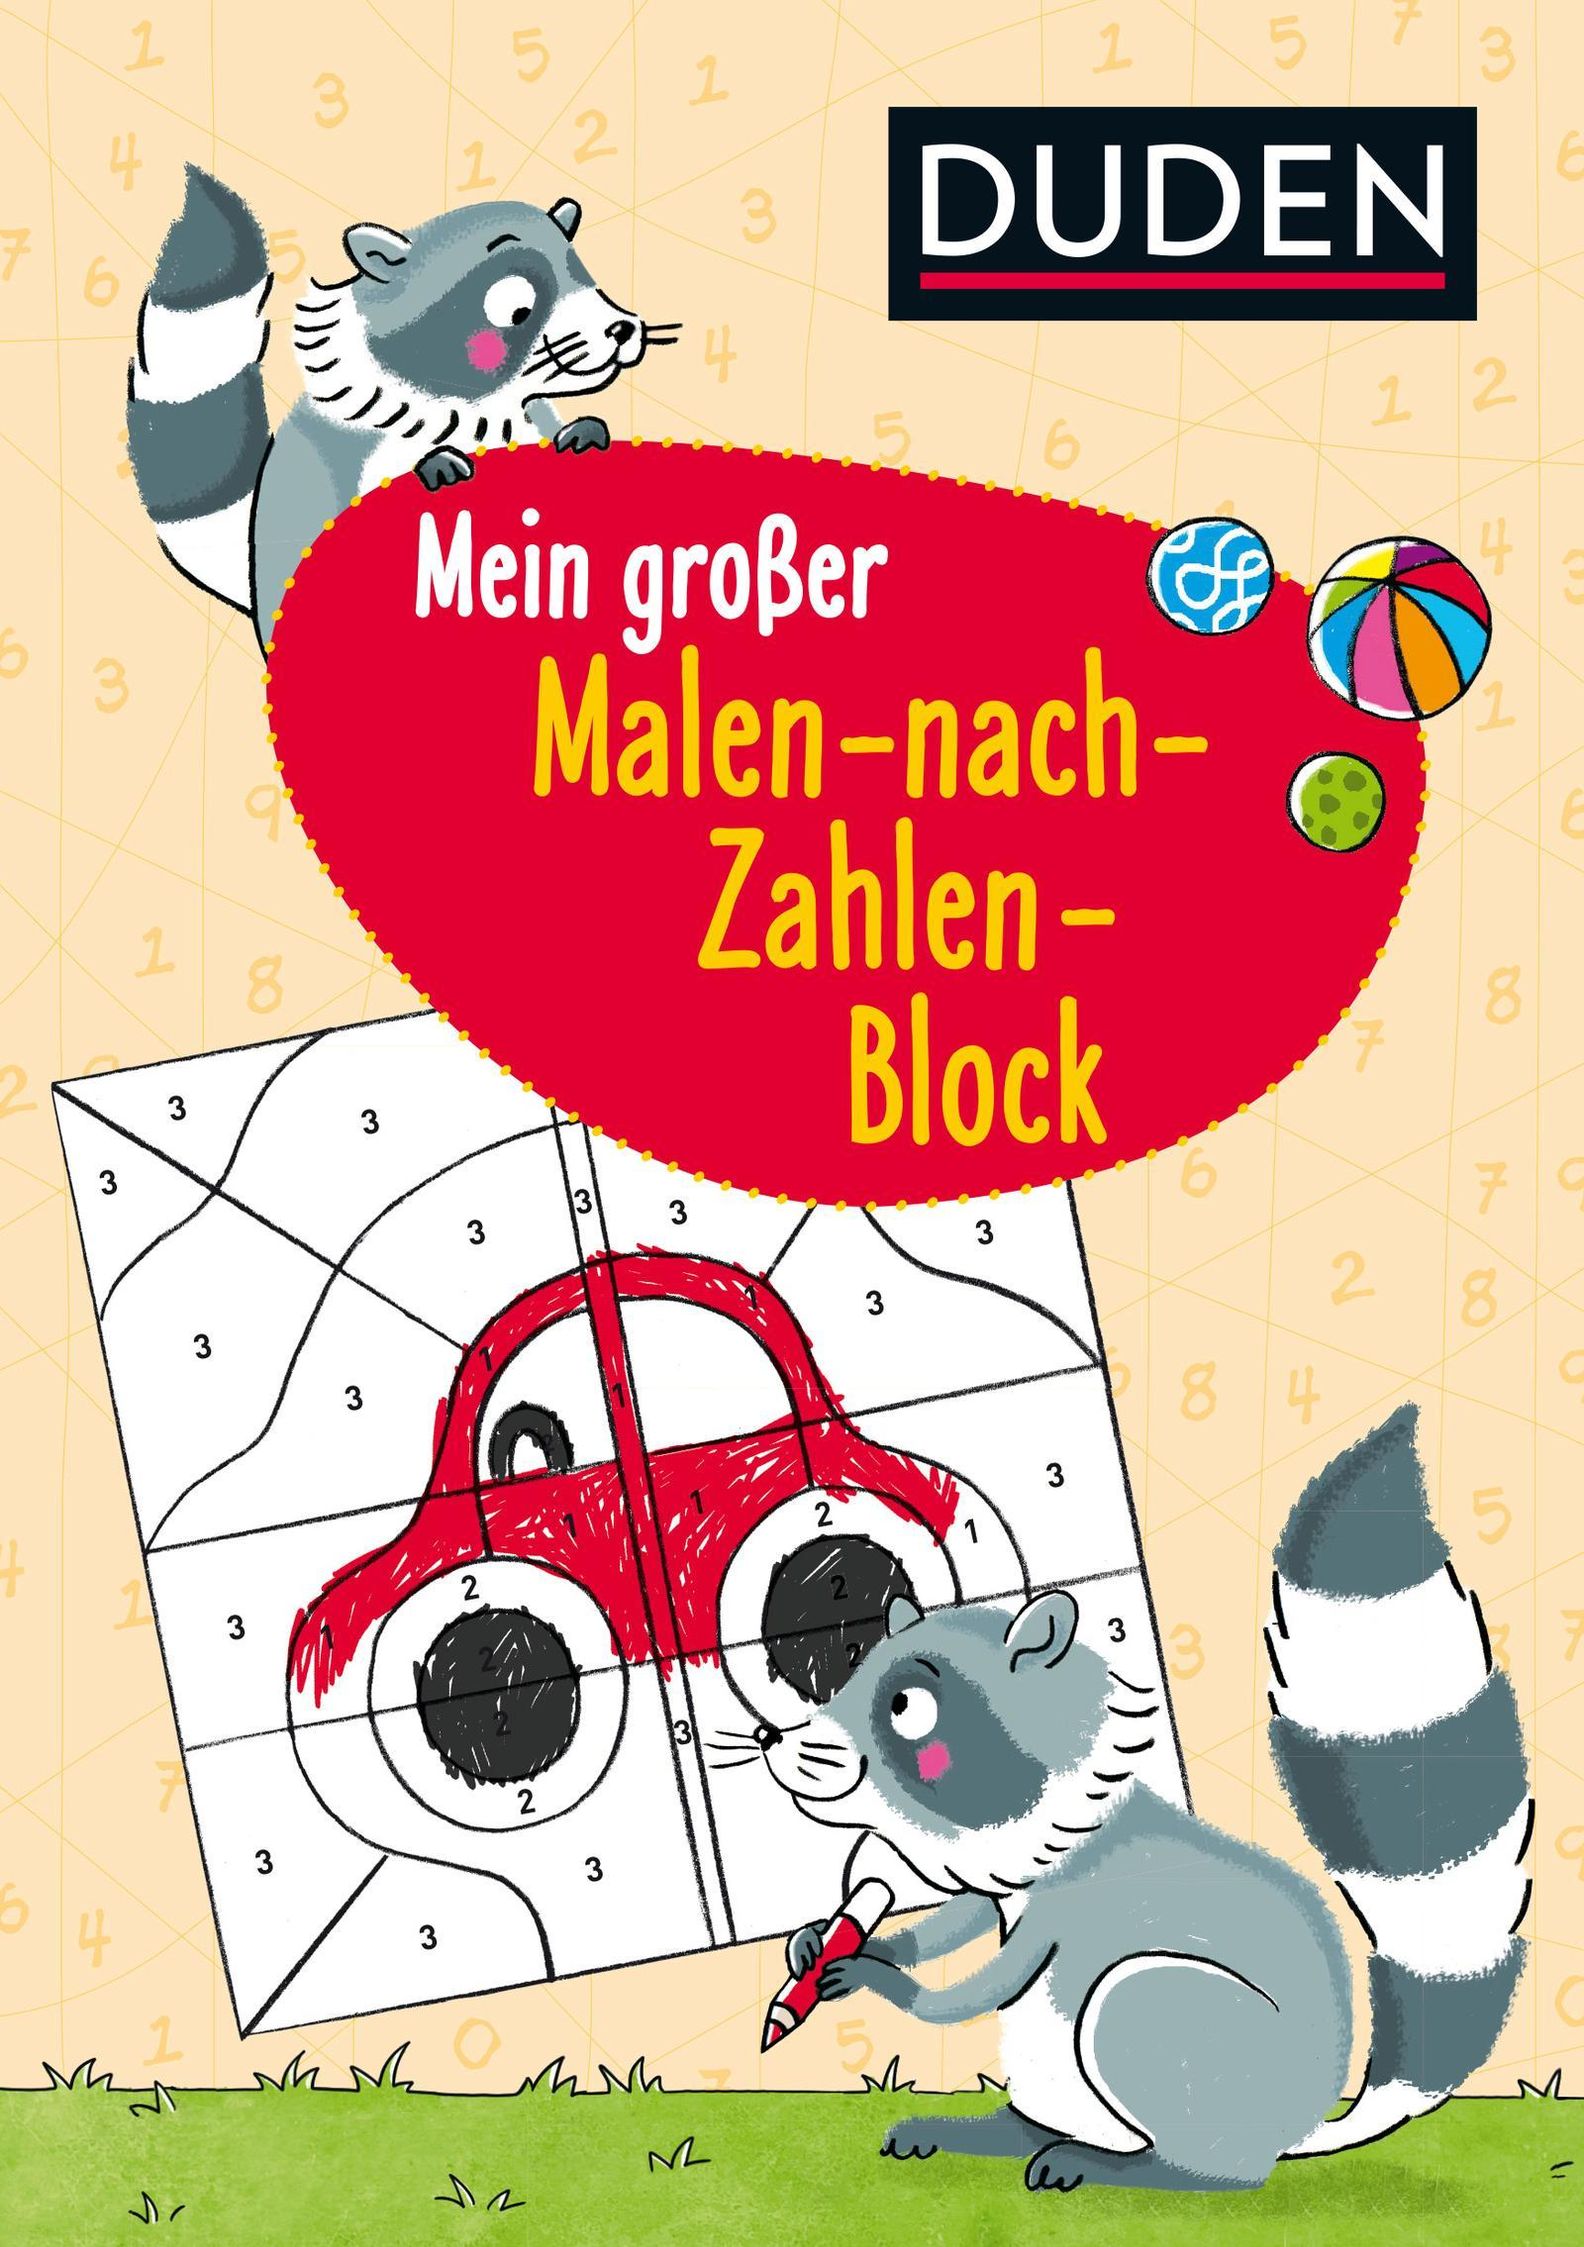 Duden: Mein grosser Malen-nach-Zahlen-Block Buch - Weltbild.ch